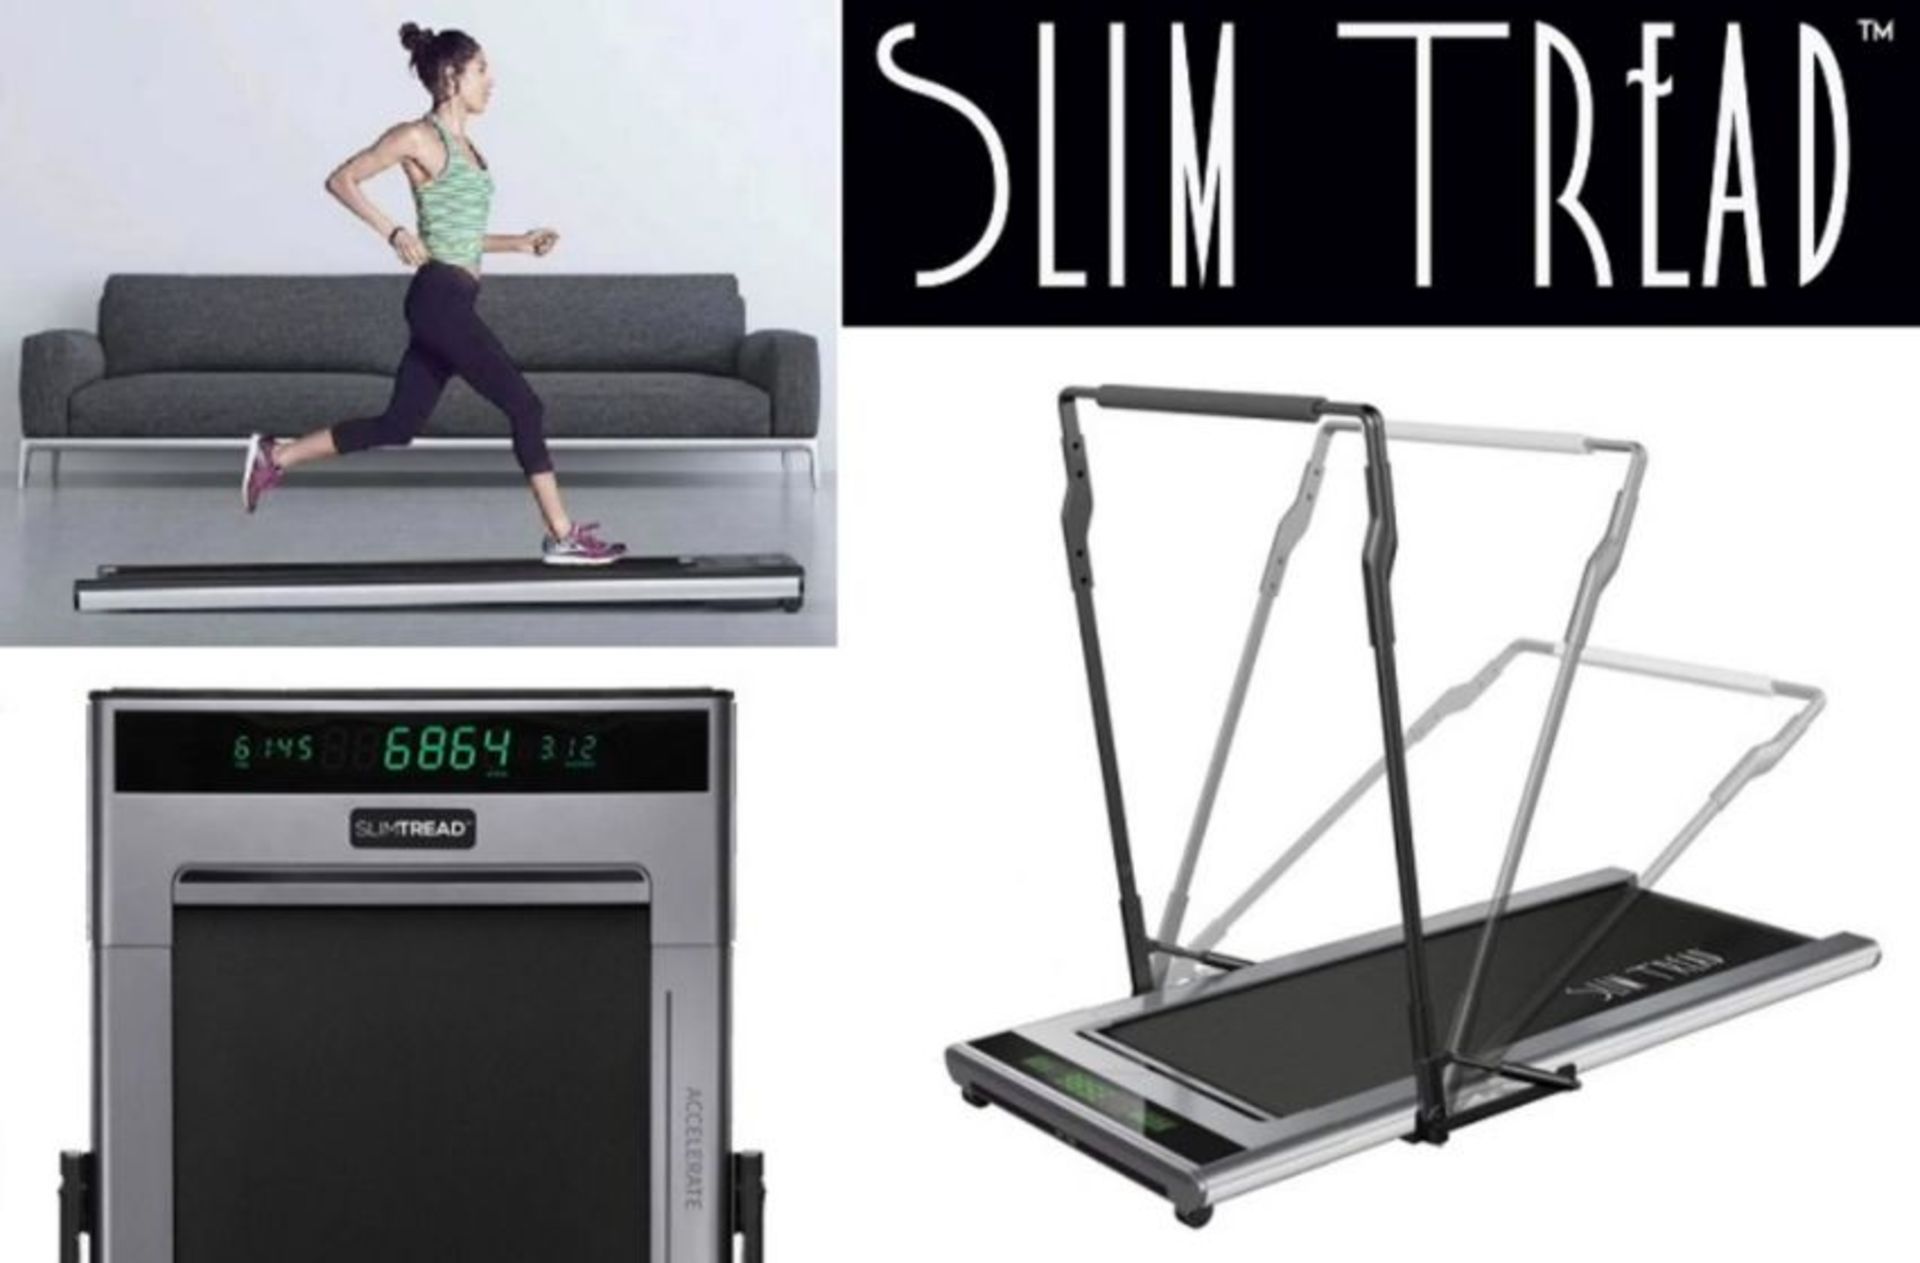 JOB LOT of 10 x Slim Tread Ultra Thin Smart Treadmill Running / Walking Machines - Lightweight